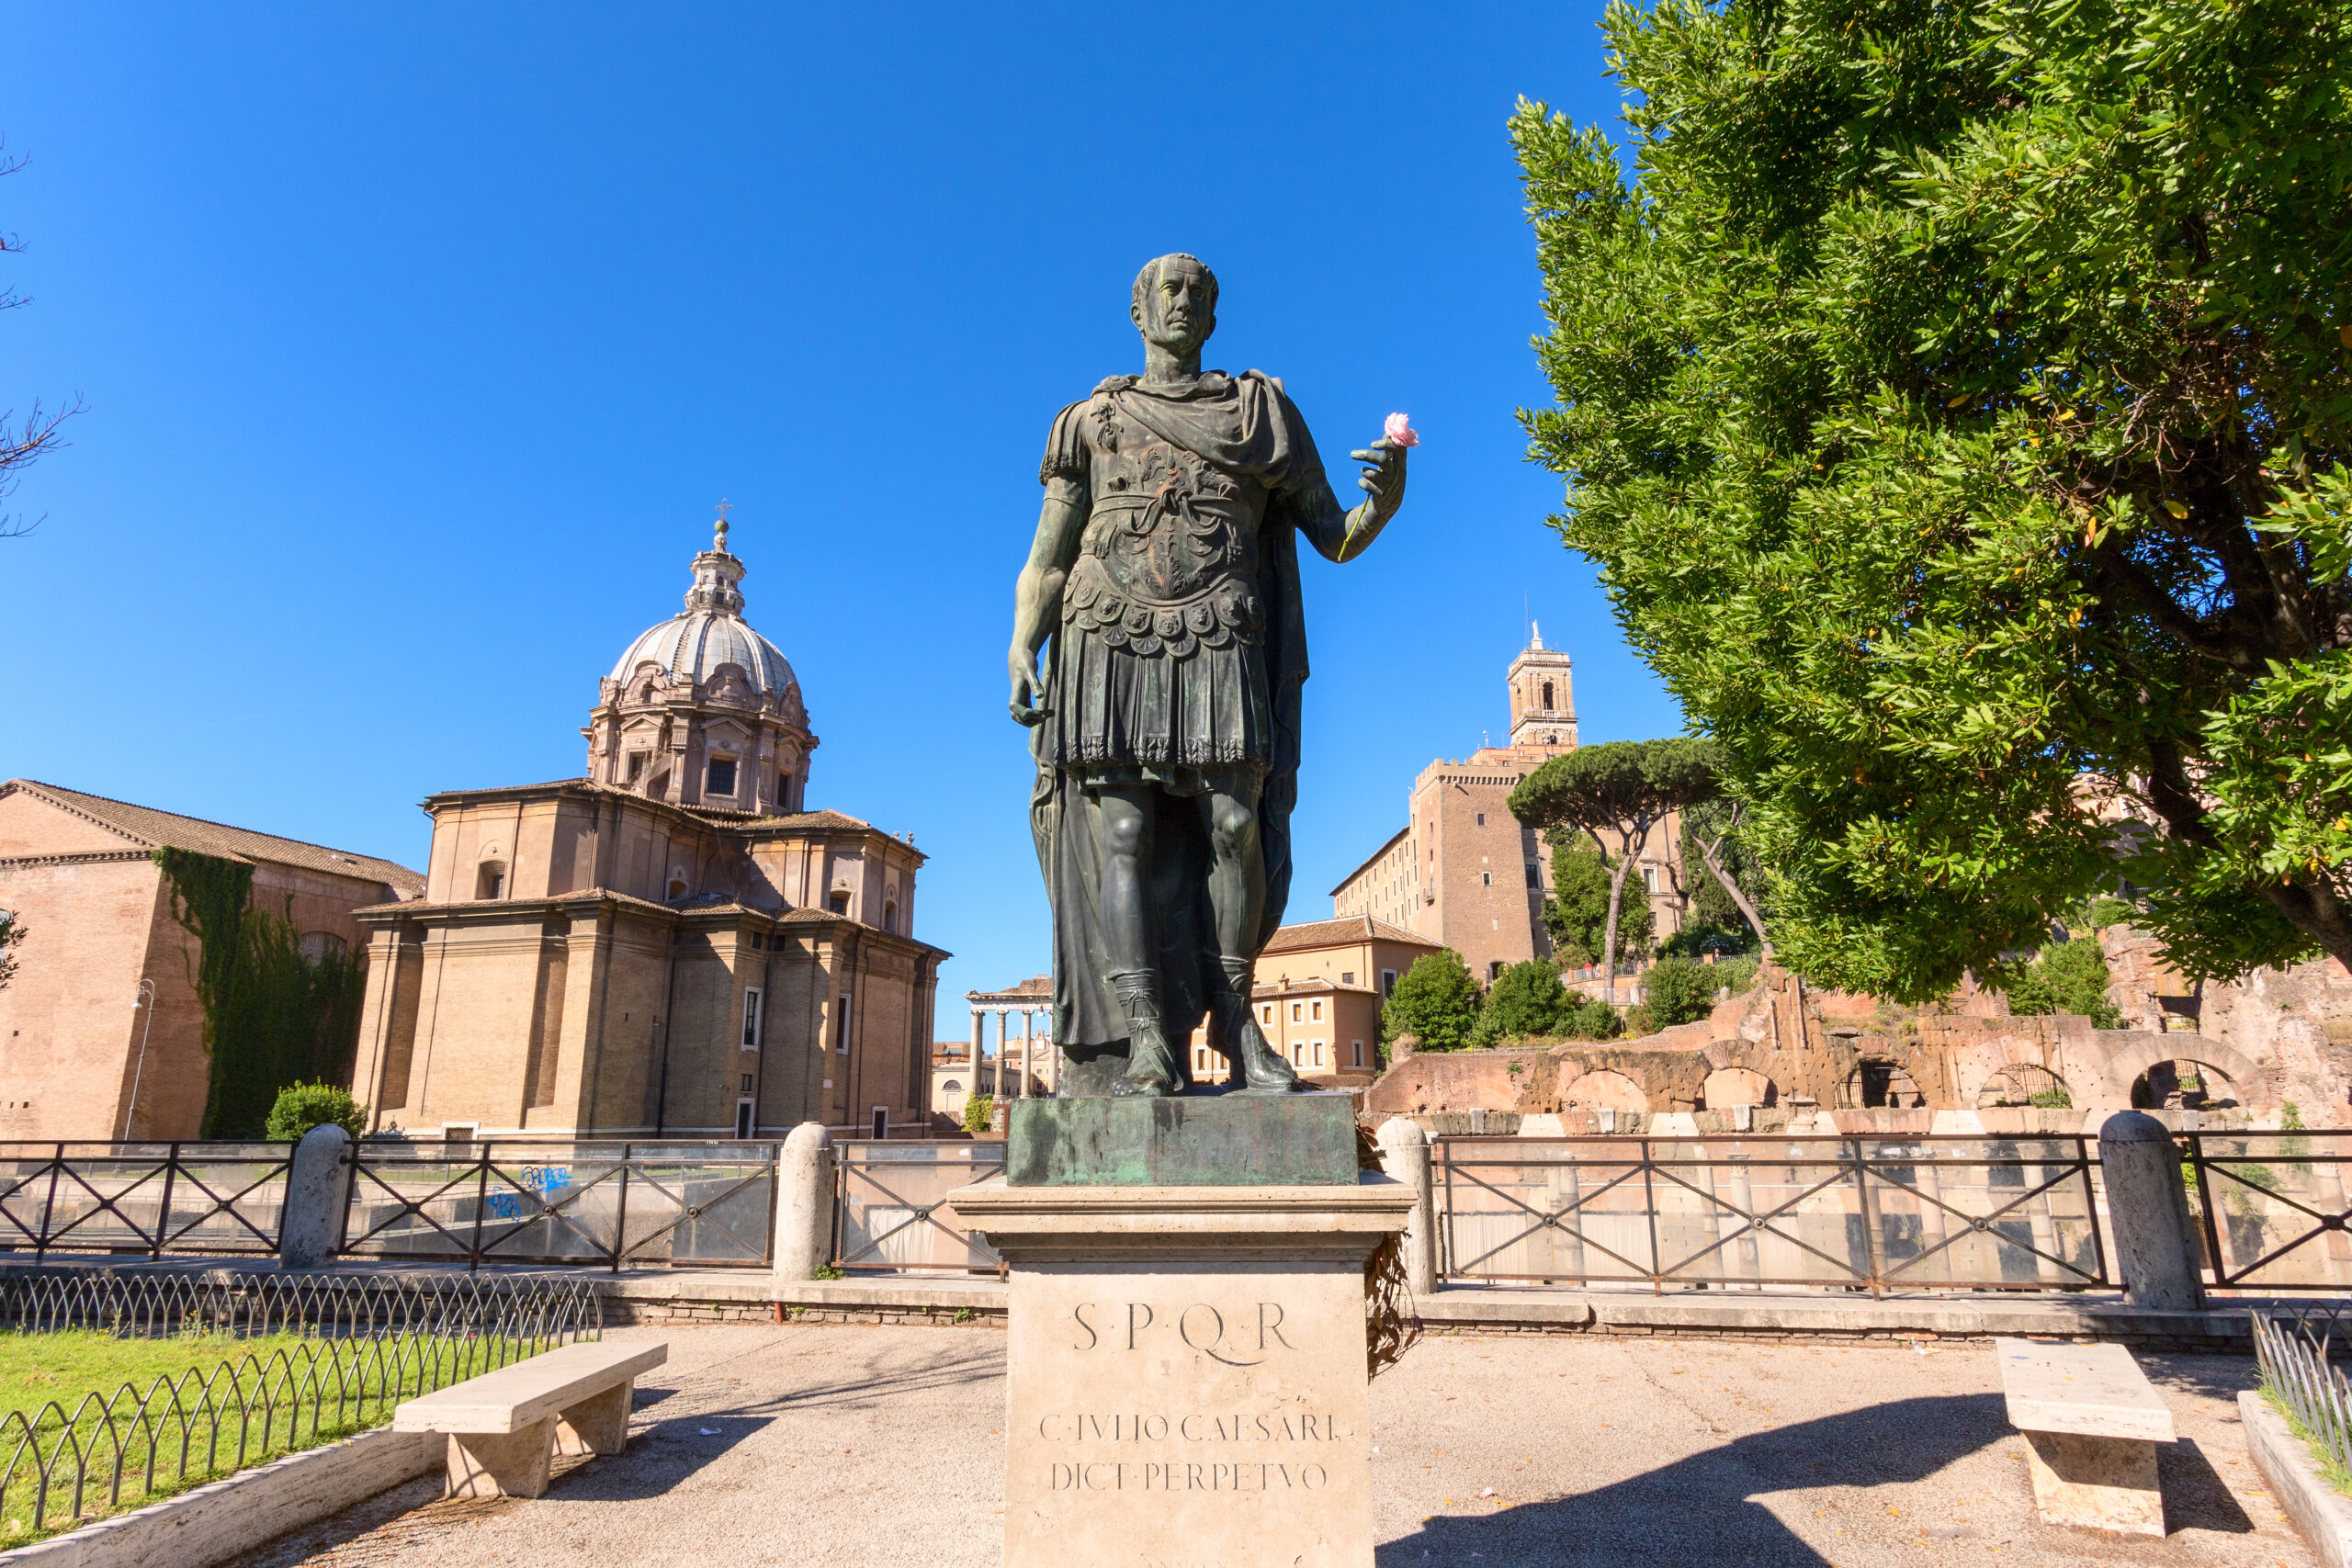 Julius Caesar bronze statue, Rome